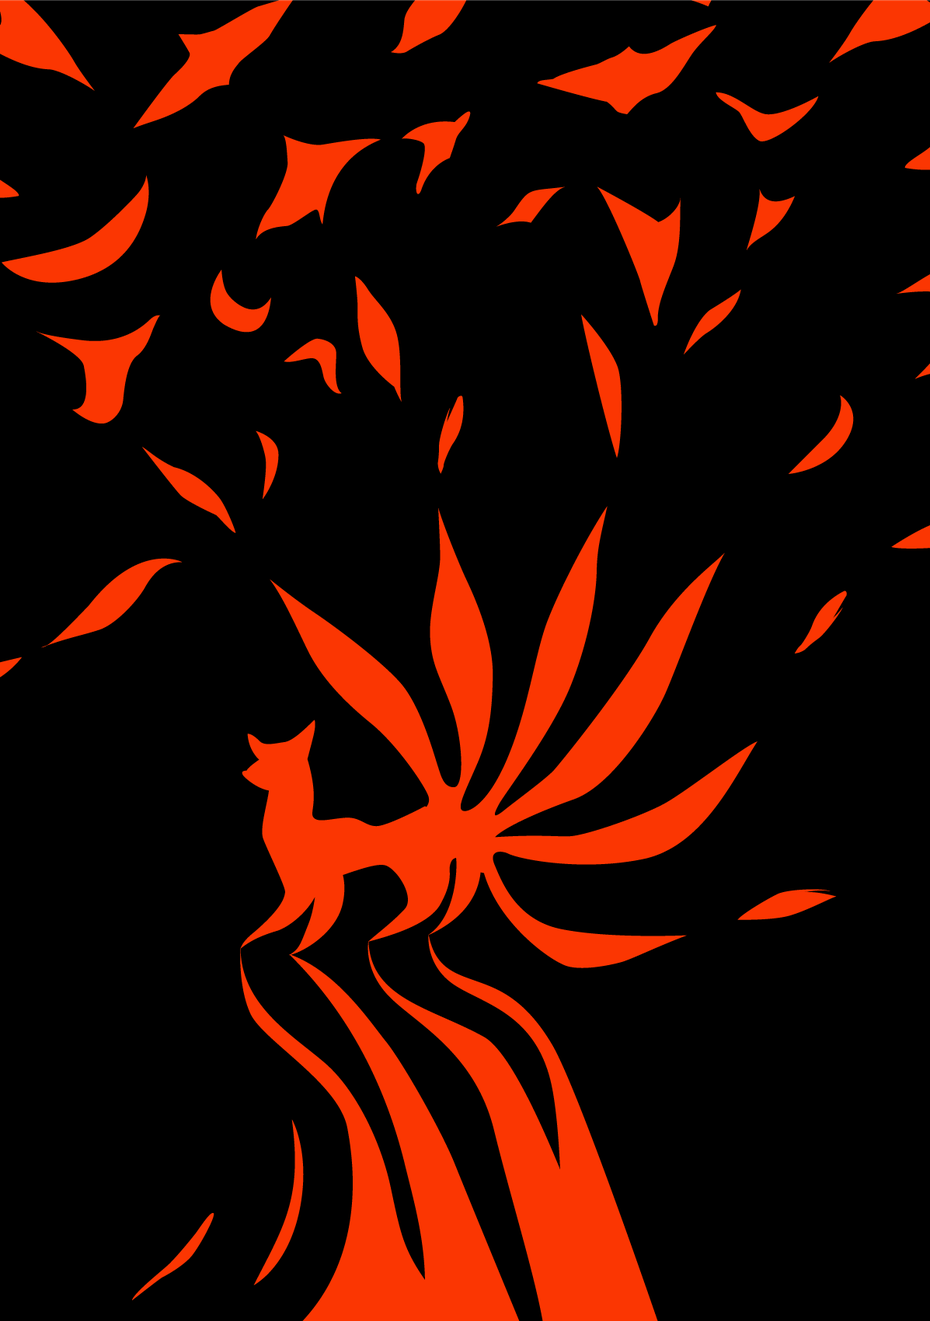 描く人、造形作家であるミヤタタカシ (Takashi Miyata) が描く狐火